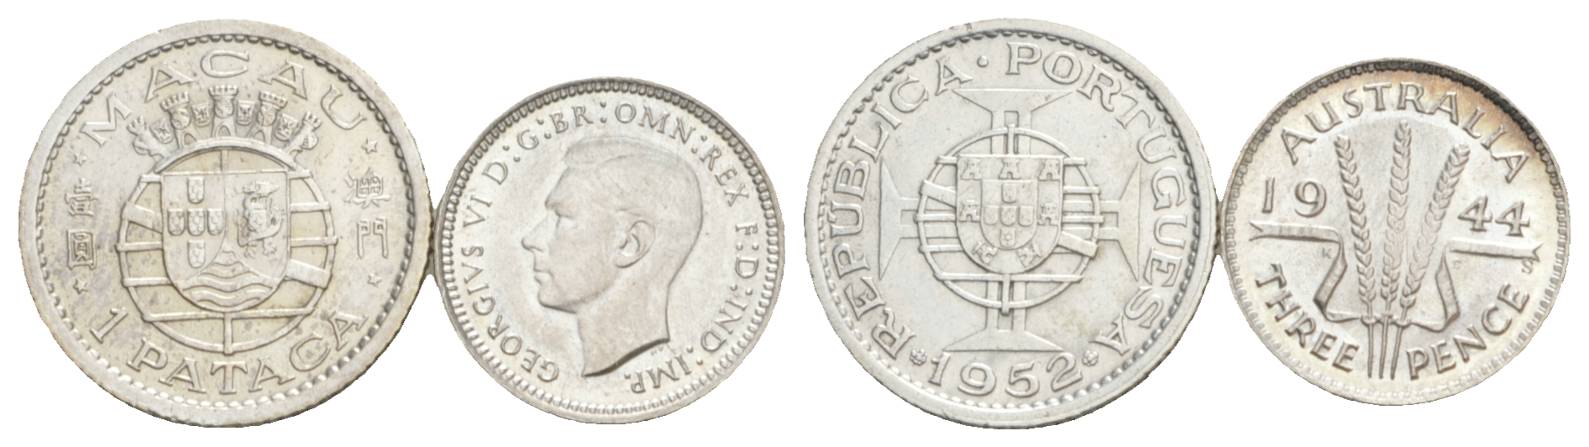  Ausland, 2 Kleinmünzen (1952/1944)   